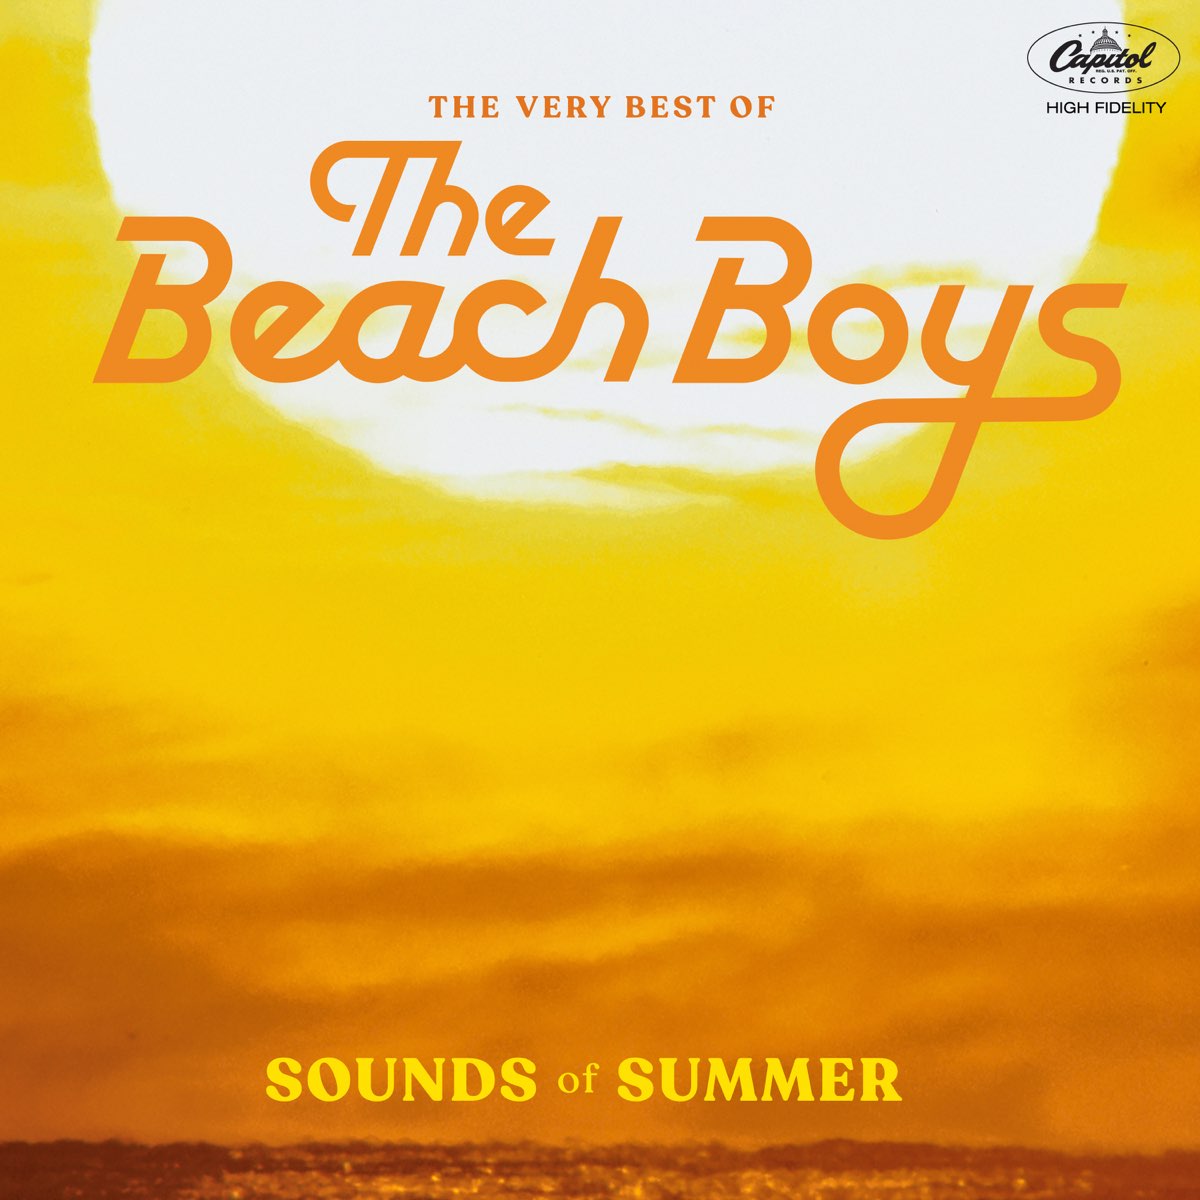 ‎Sounds of Summer The Very Best of the Beach Boys par The Beach Boys